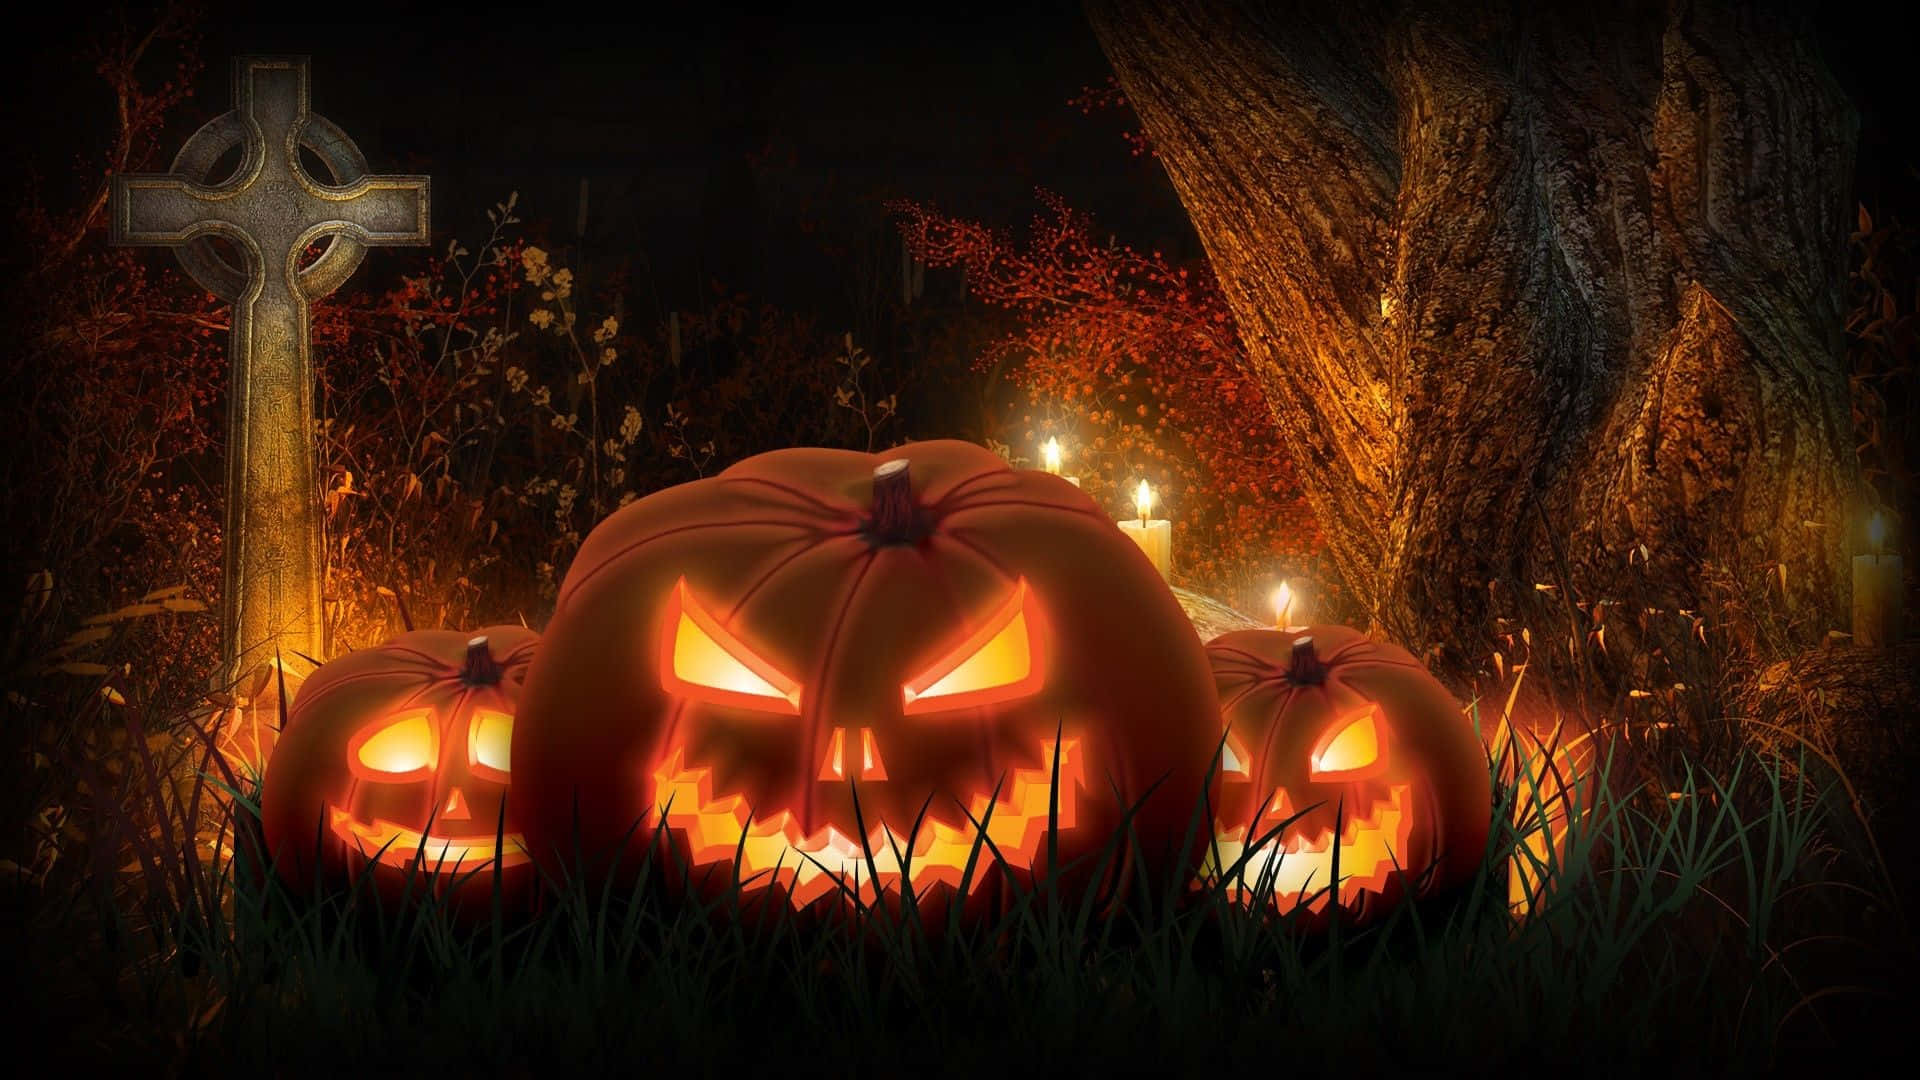 Dark, Aesthetic Halloween Scene